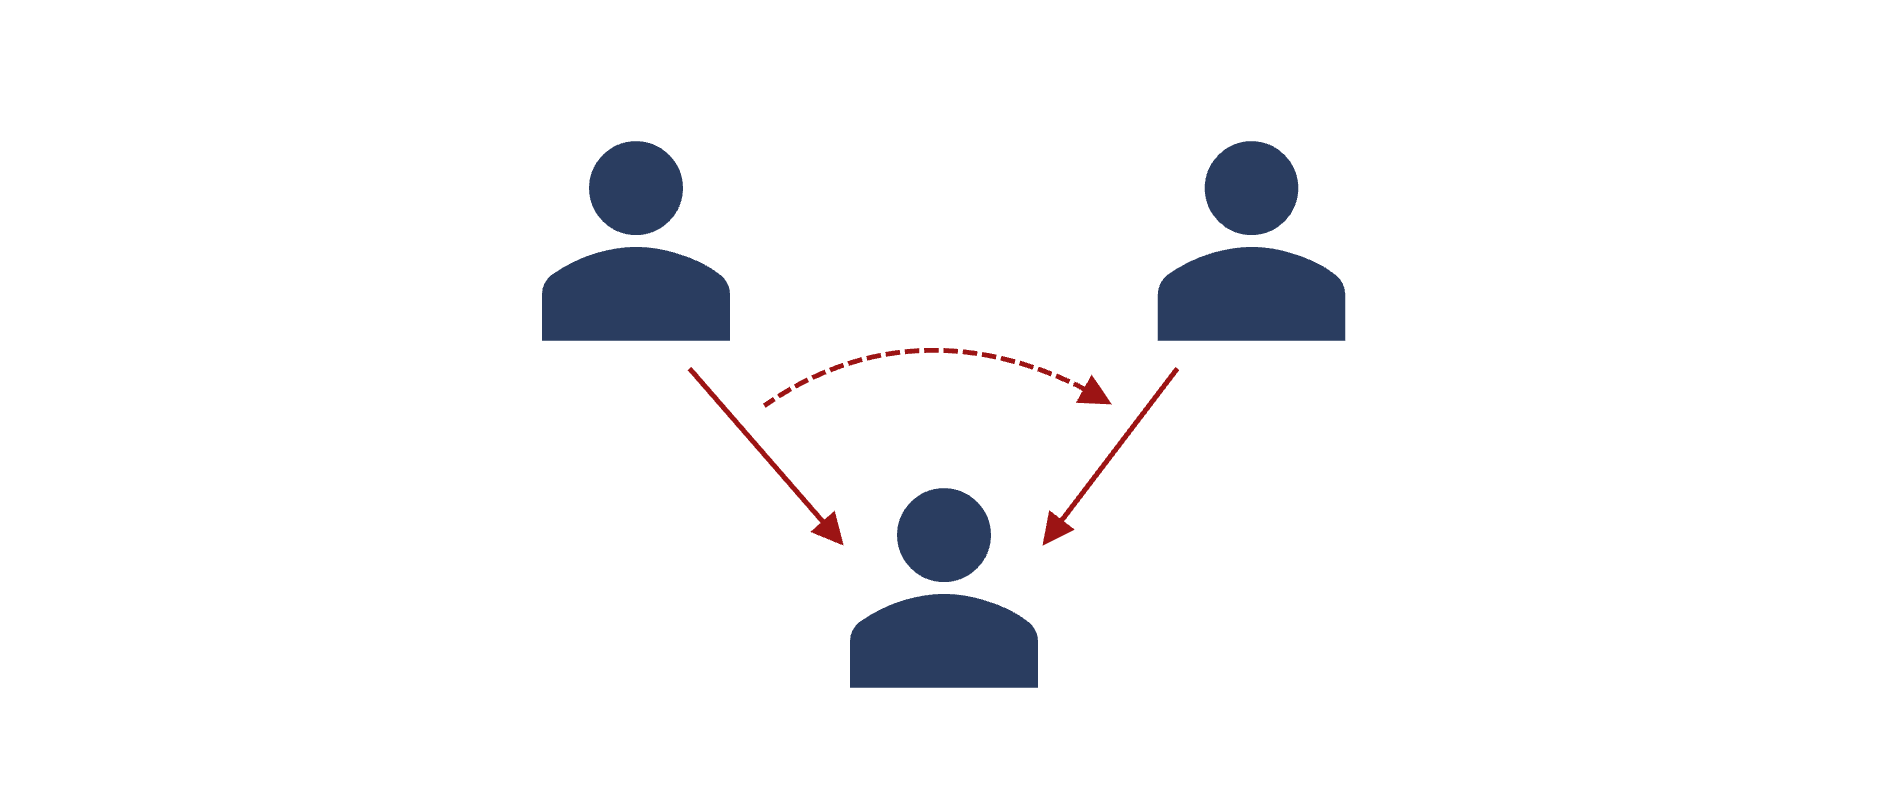 Stilisierte Grafik einer Dreiecksbeziehung: Von zwei Personen zeigt jeweils ein Pfeil auf die dritte Person; zwischen den Pfeilen befindet sich ein gestrichelter Pfeil, der anzeigt, dass der Pfeil von der einen Person auf die andere Person übergeht.